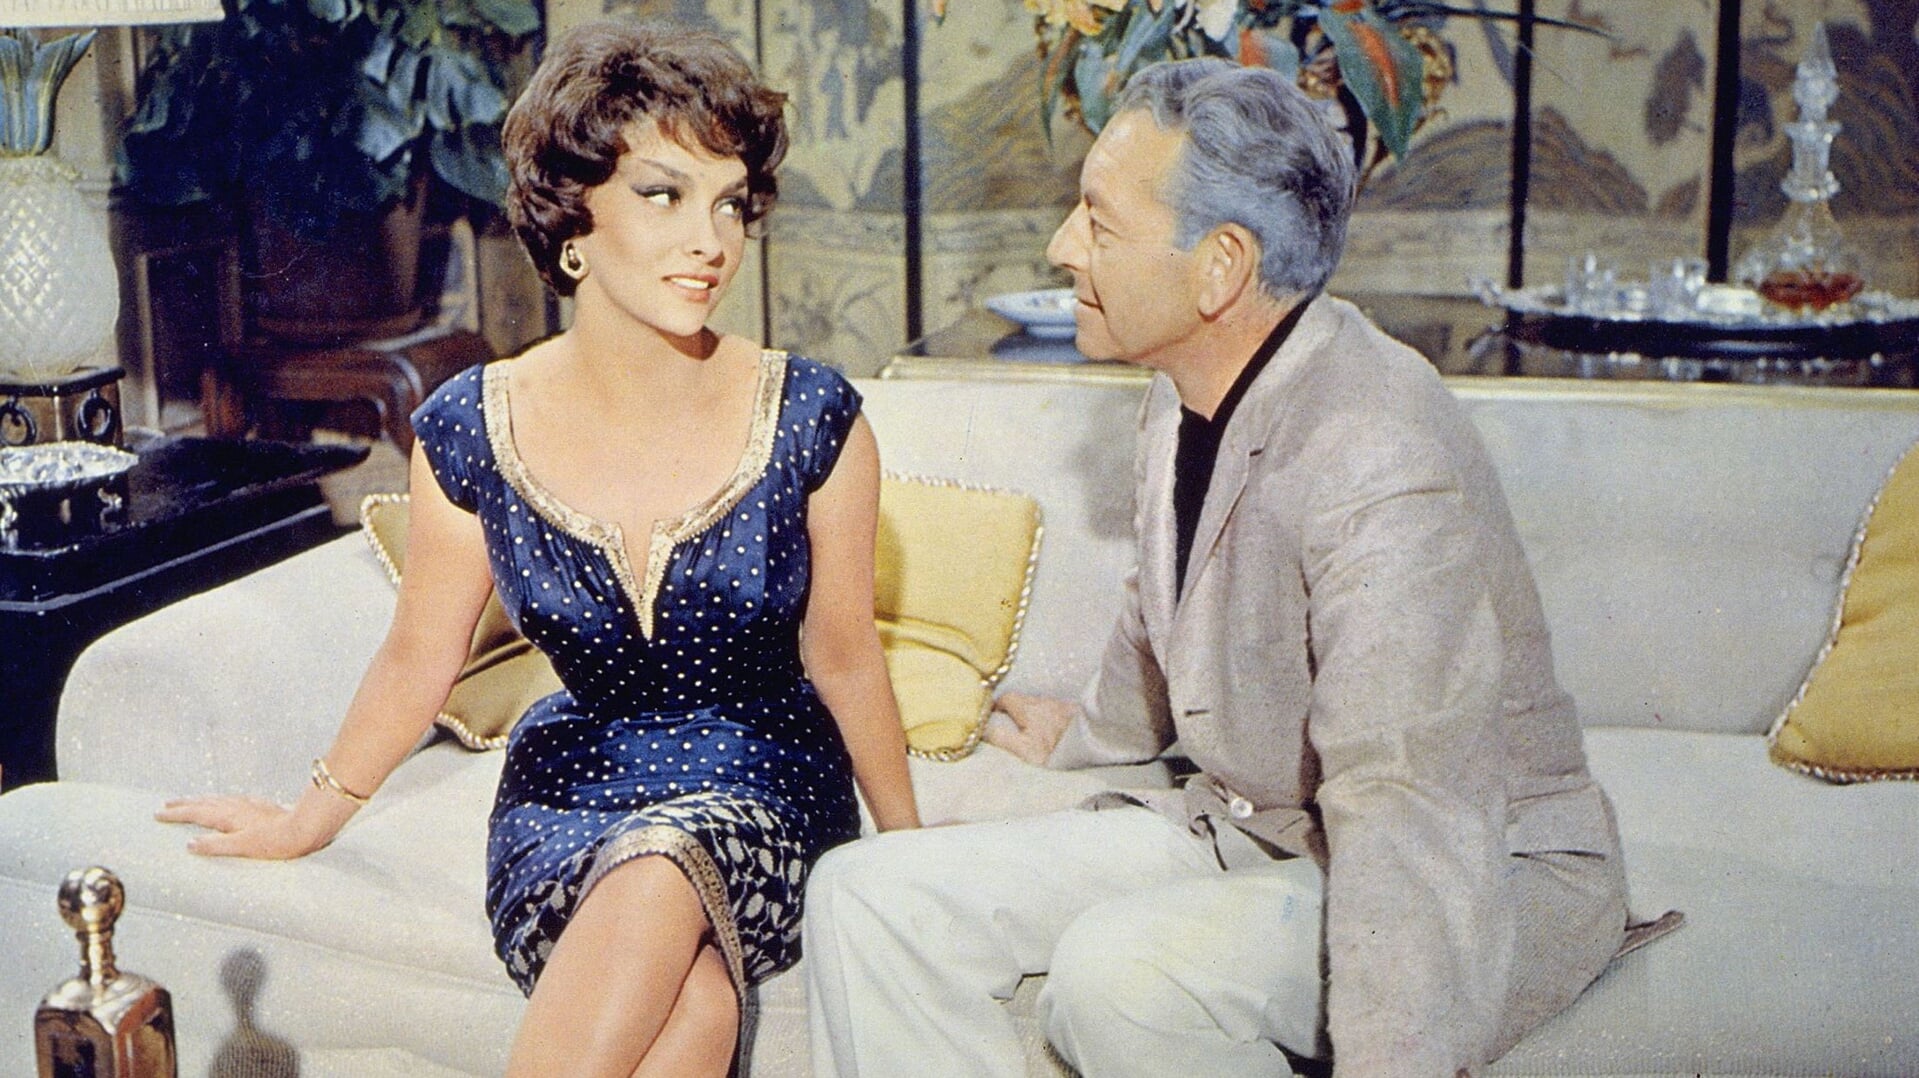 Gina Lollobridgida in de film Never so few uit 1959.